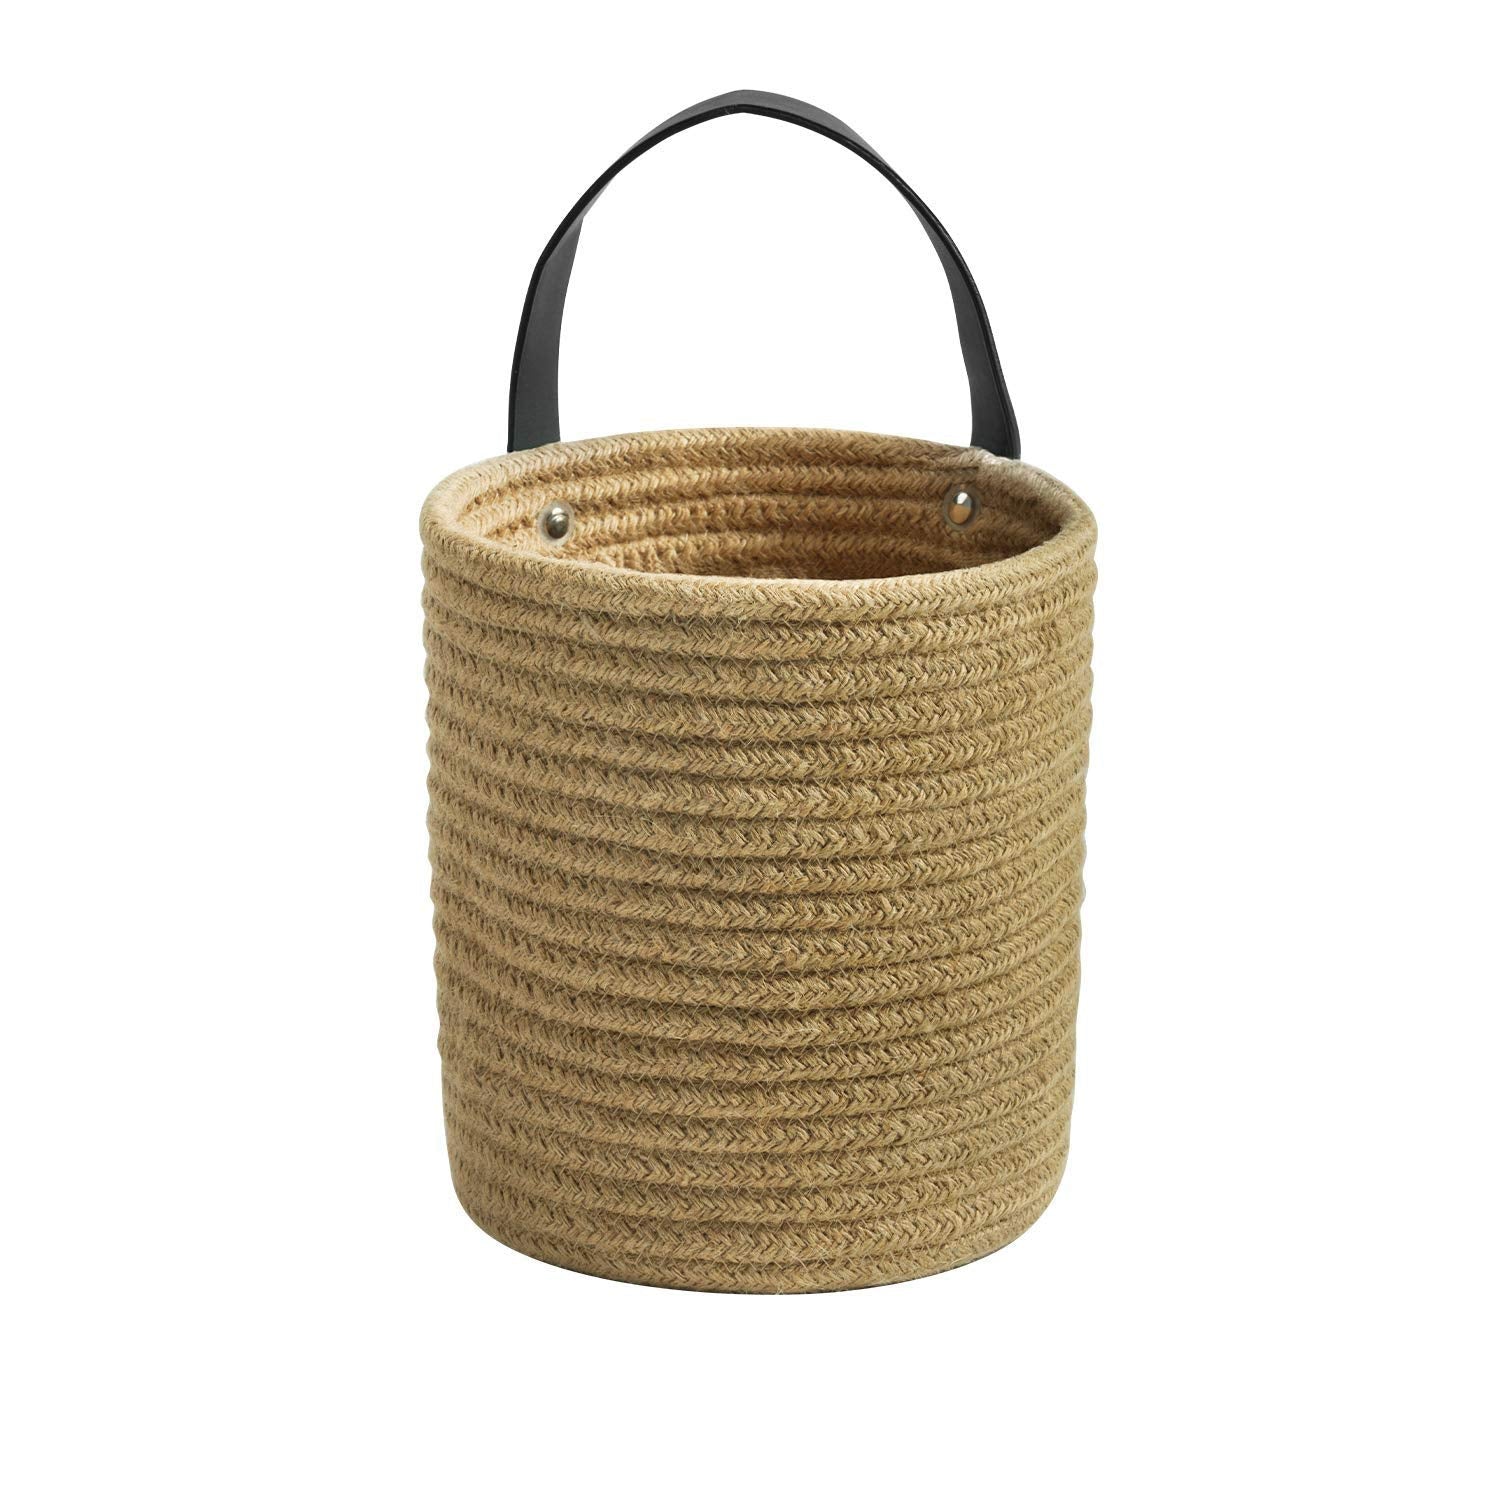 Ecofynd cotton Rope Plant Basket Rope Basket freeshipping - Ecofynd